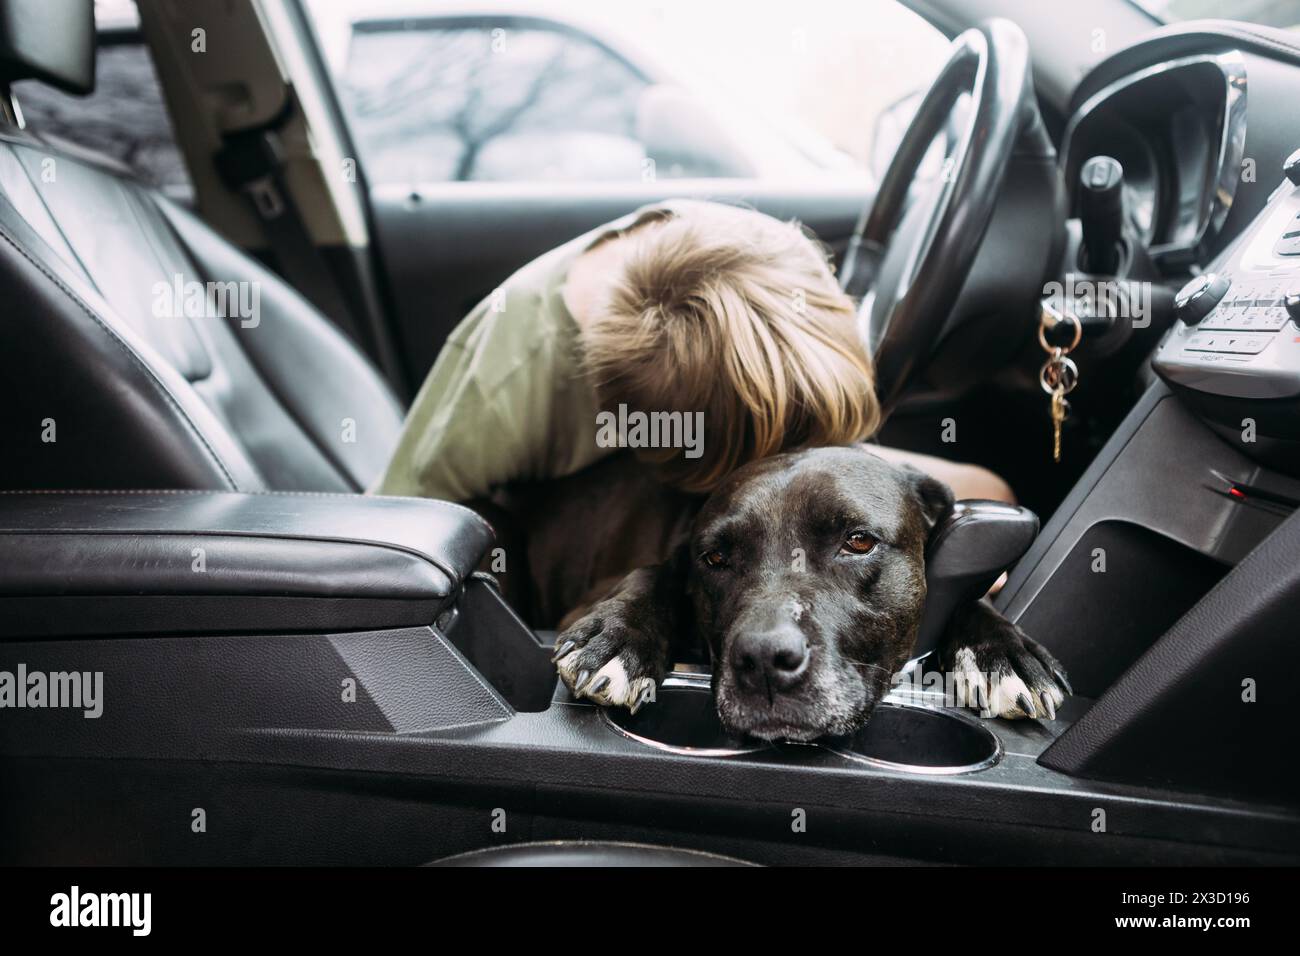 Douce étreinte dans une voiture, le garçon embrasse son fidèle chien Banque D'Images